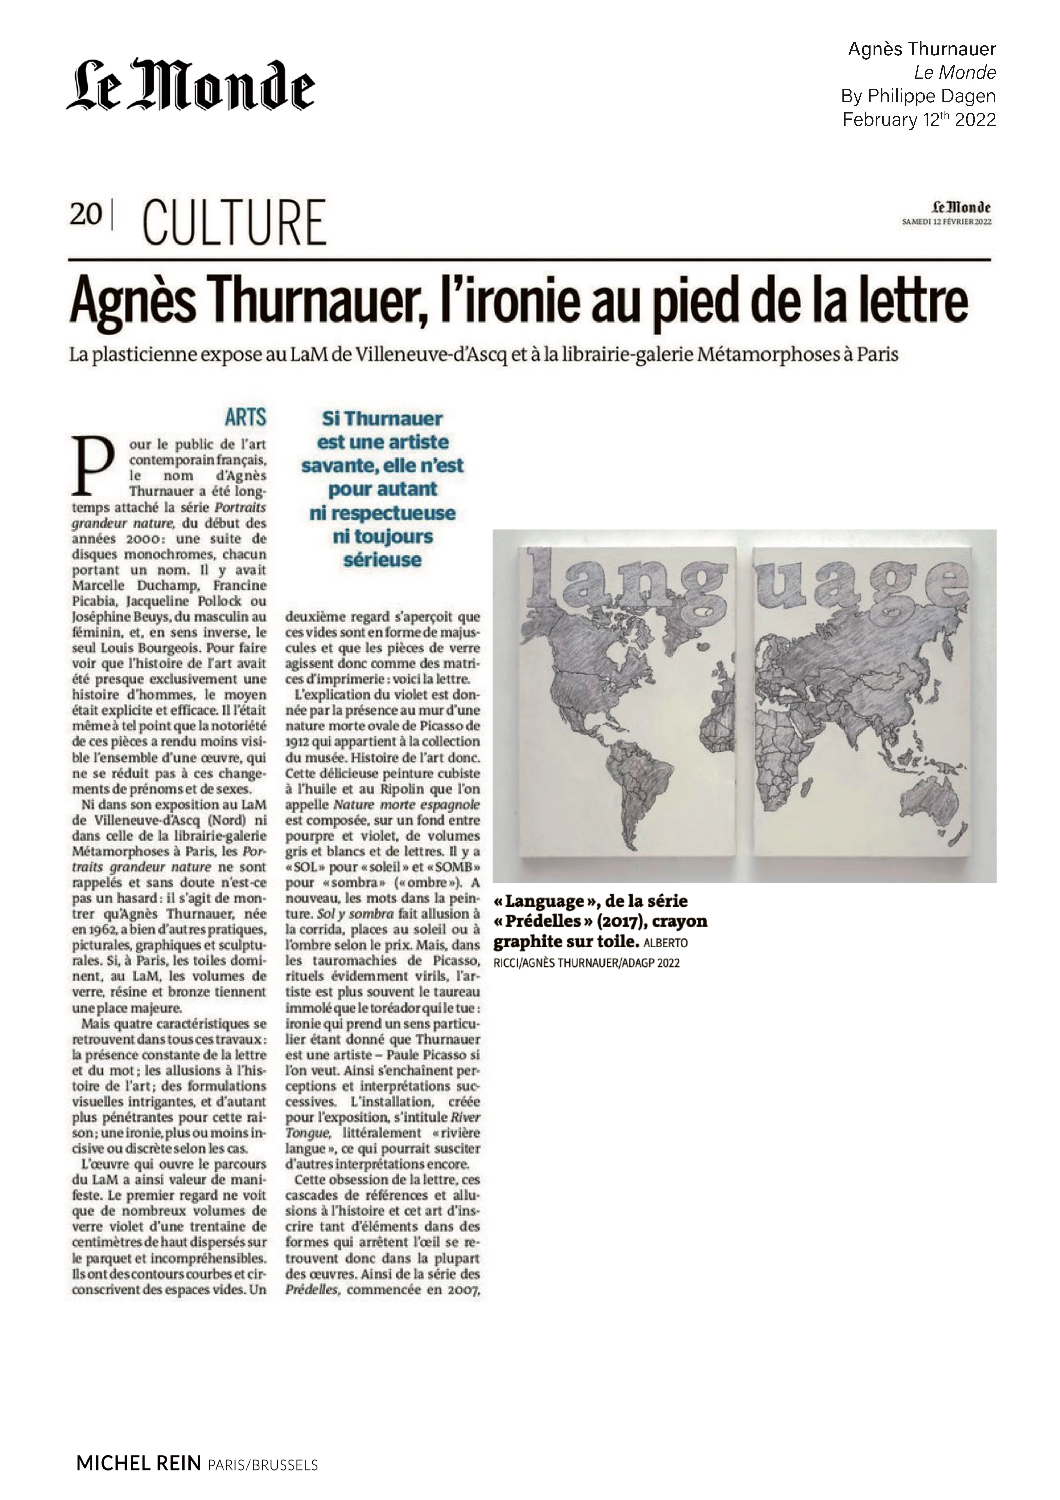 Agnes Thurnauer, l'ironie au pied de la lettre - Le Monde